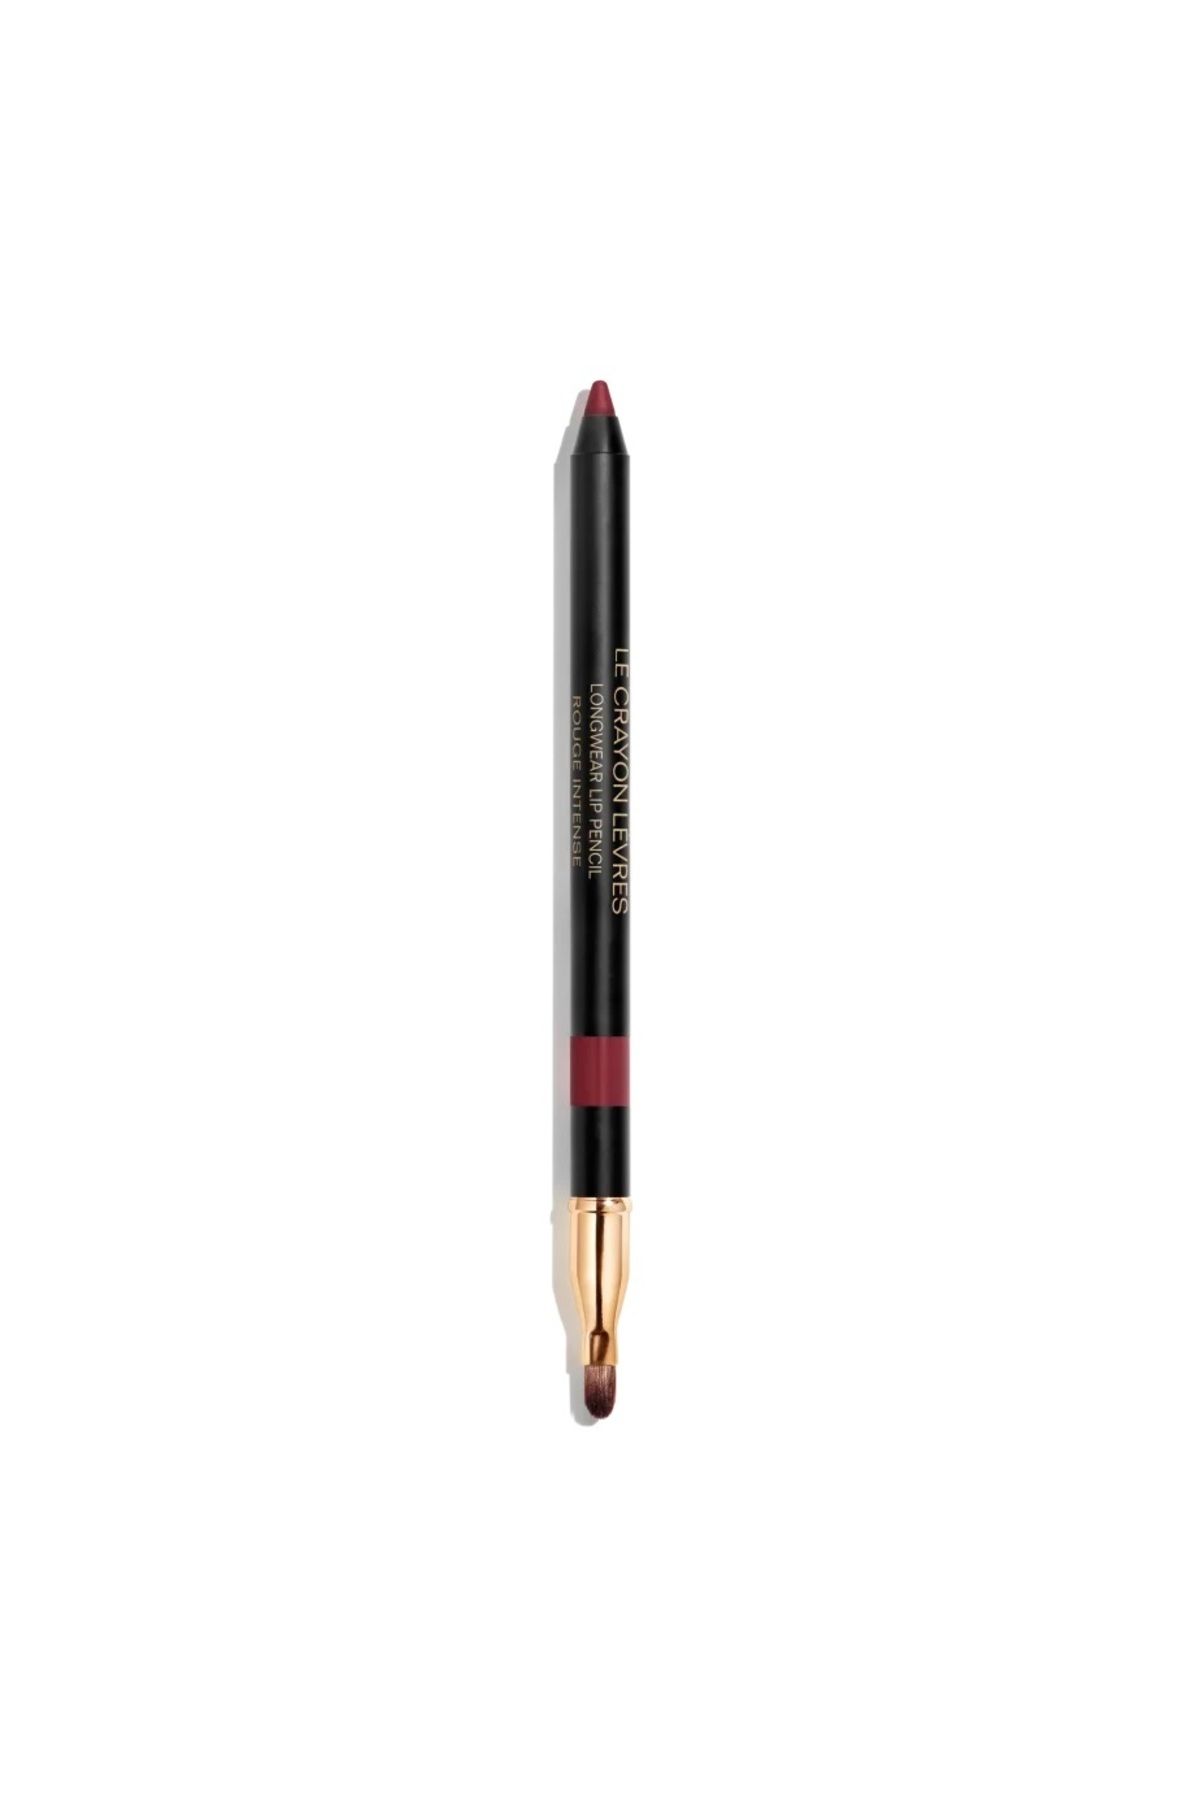 Chanel LE CRAYON LÈVRES - Ultra Uzun Süre Kalıcı Belirginleştirici Yarı Mat Bitişli Dudak Kalemi